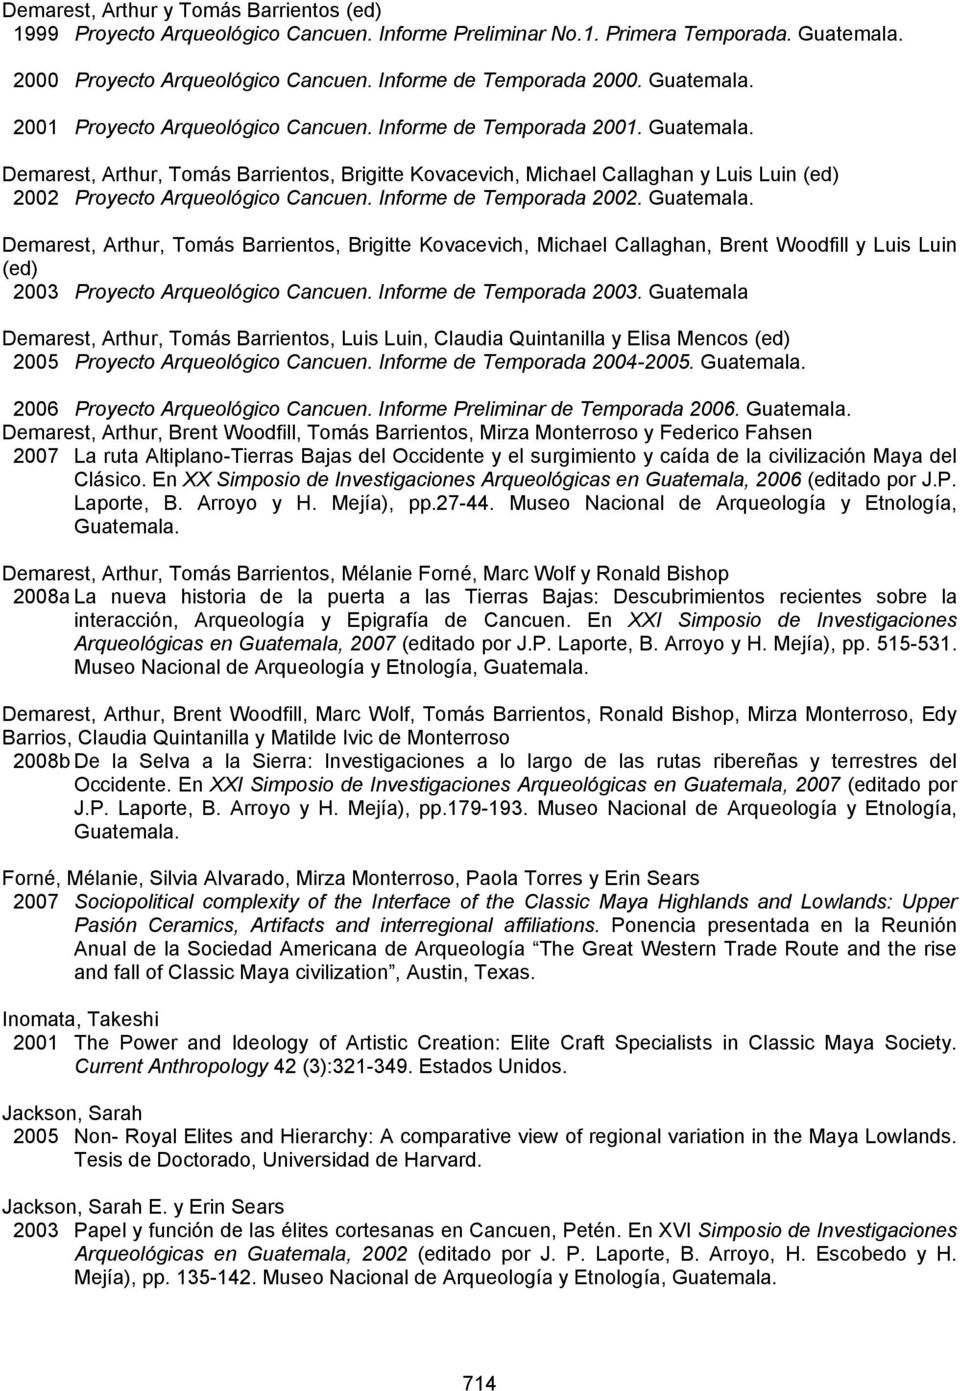 Demarest, Arthur, Tomás Barrientos, Brigitte Kovacevich, Michael Callaghan y Luis Luin (ed) 2002 Proyecto Arqueológico Cancuen. Informe de Temporada 2002. Guatemala.